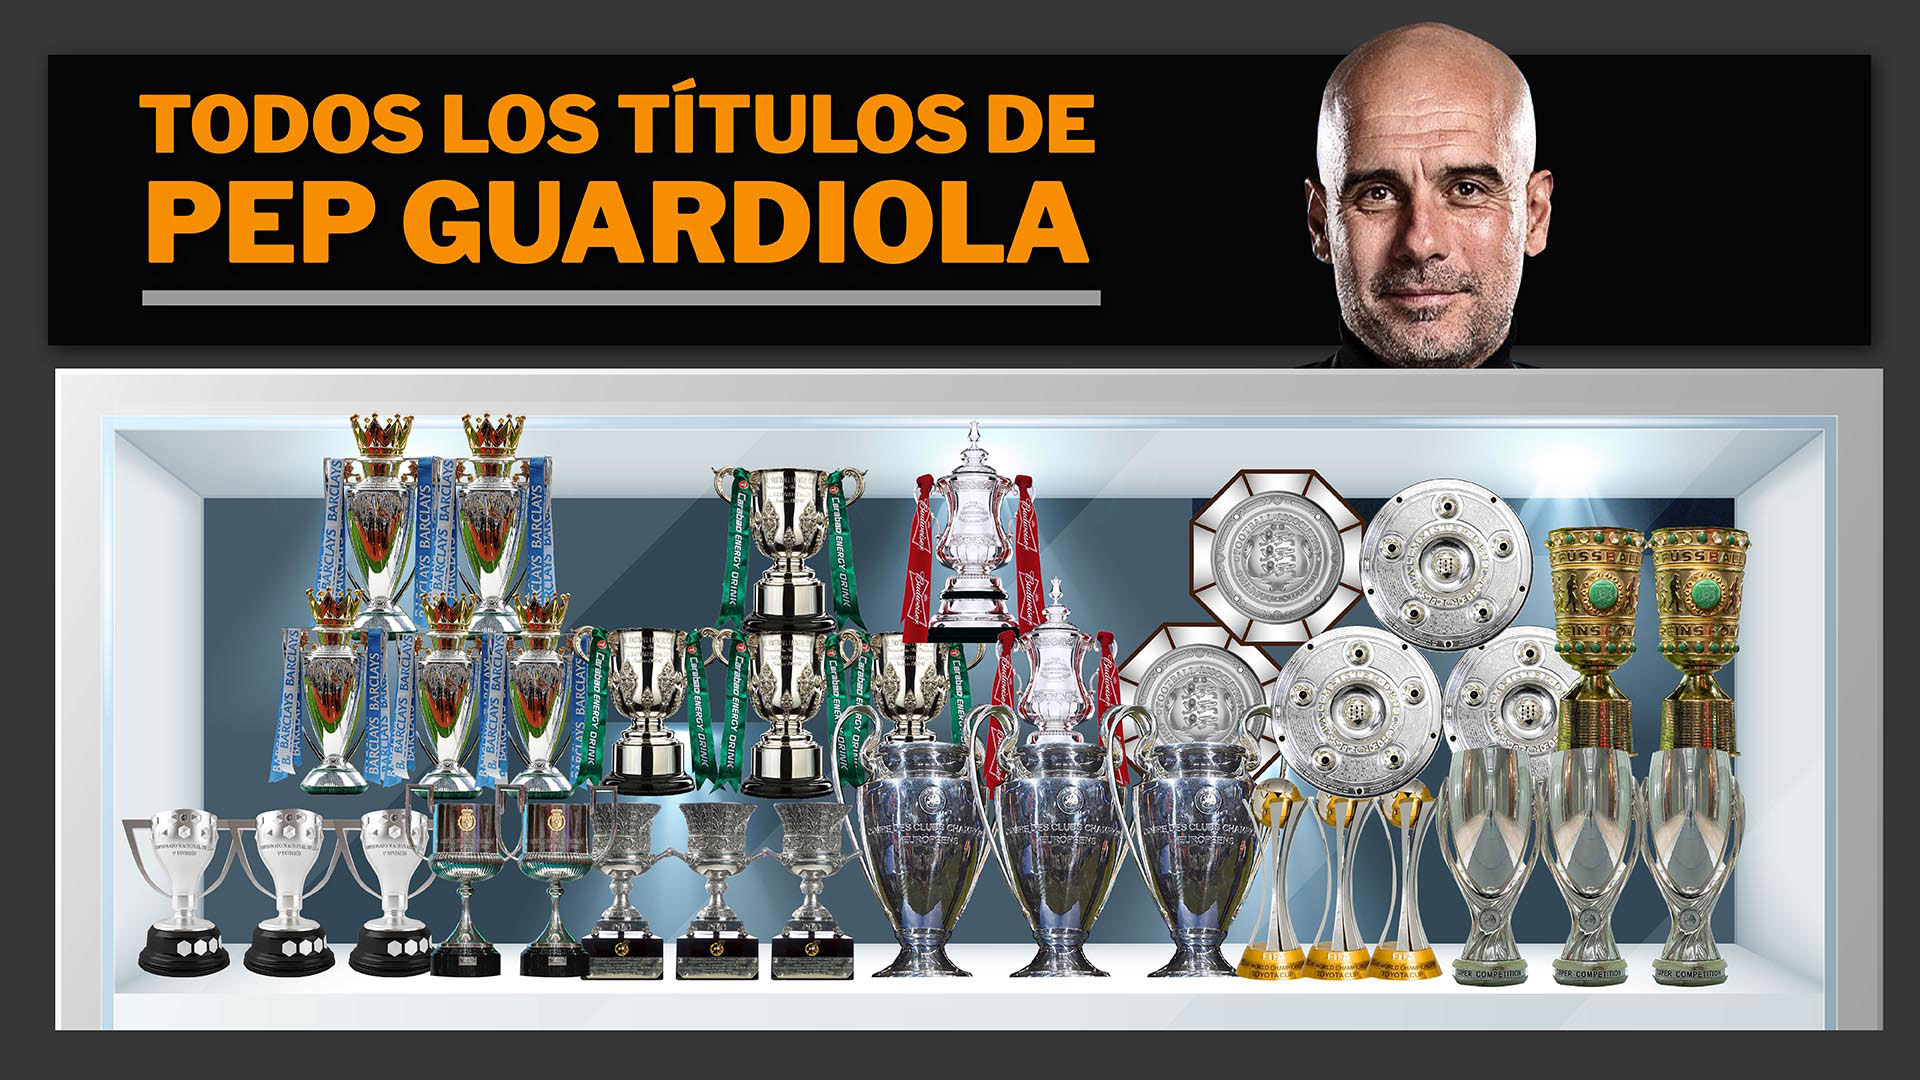 La vitrina de Pep Guardiola: el ranking de los más ganadores de la historia y los títulos de la discordia